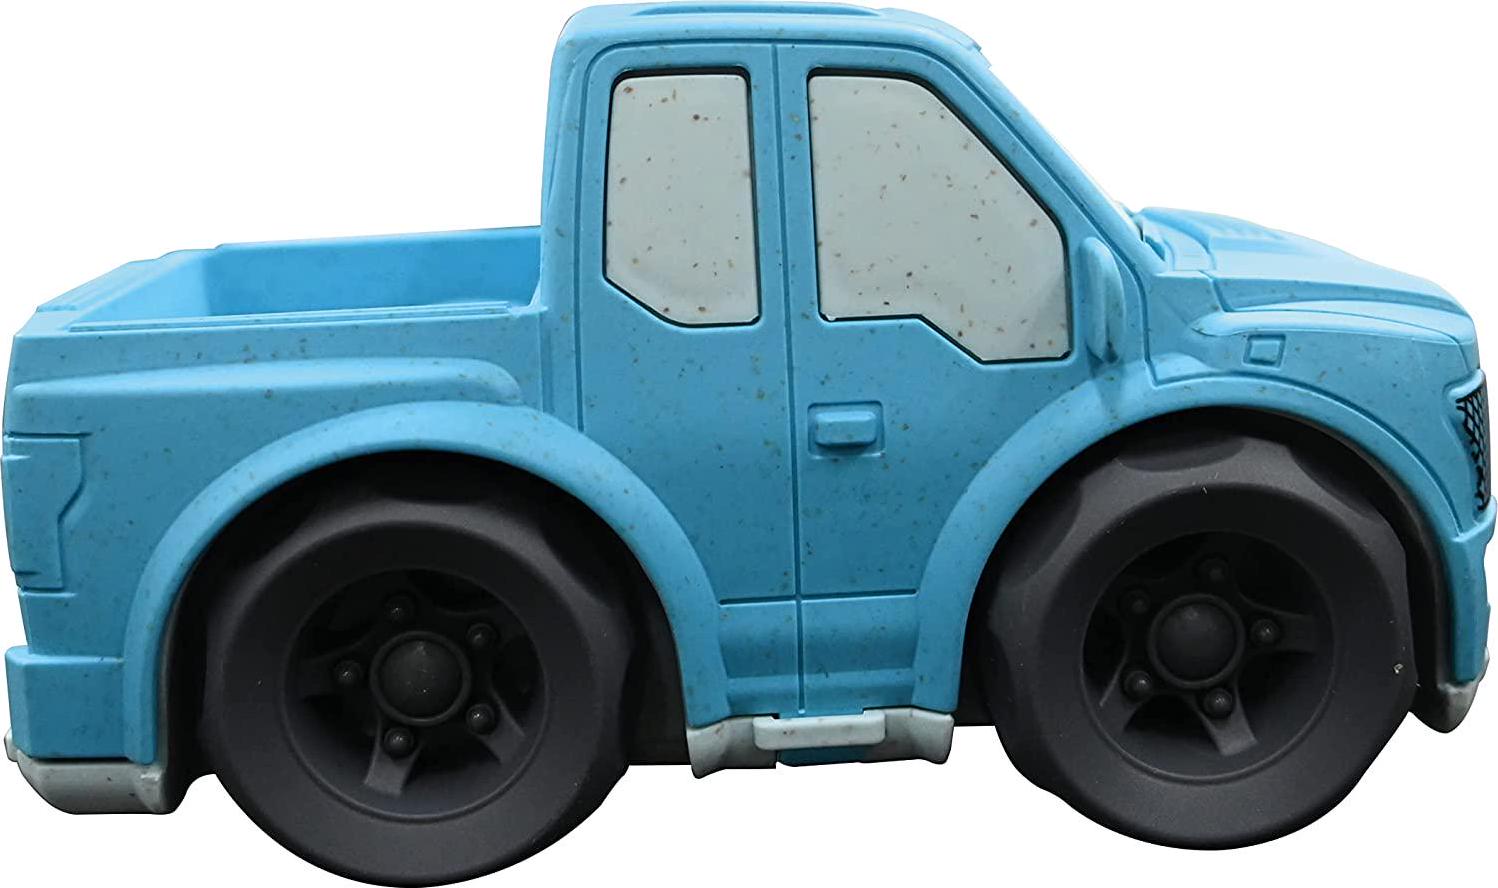 Lexibook, LEXIBOOK BIOC04 Set of Small Cars in Biodegradable bioplastic for Children